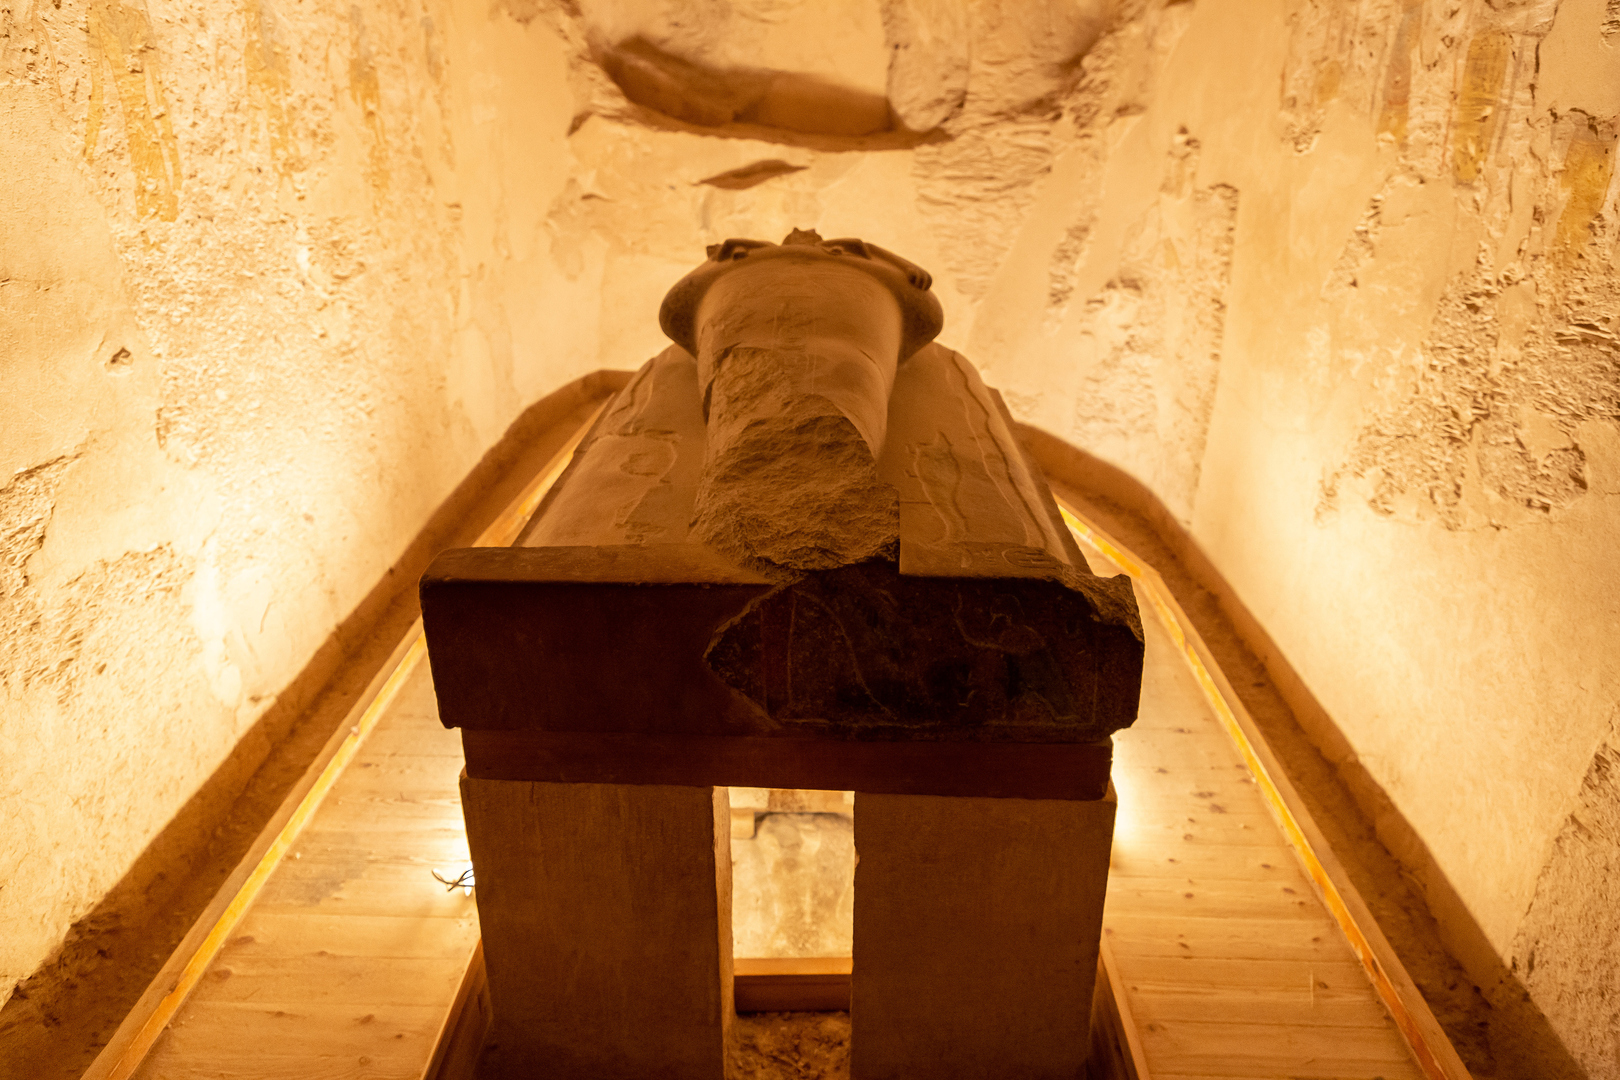 اكتشاف "عطر الخلود" الفرعوني المستخدم في التحنيط عمره 3500 سنة